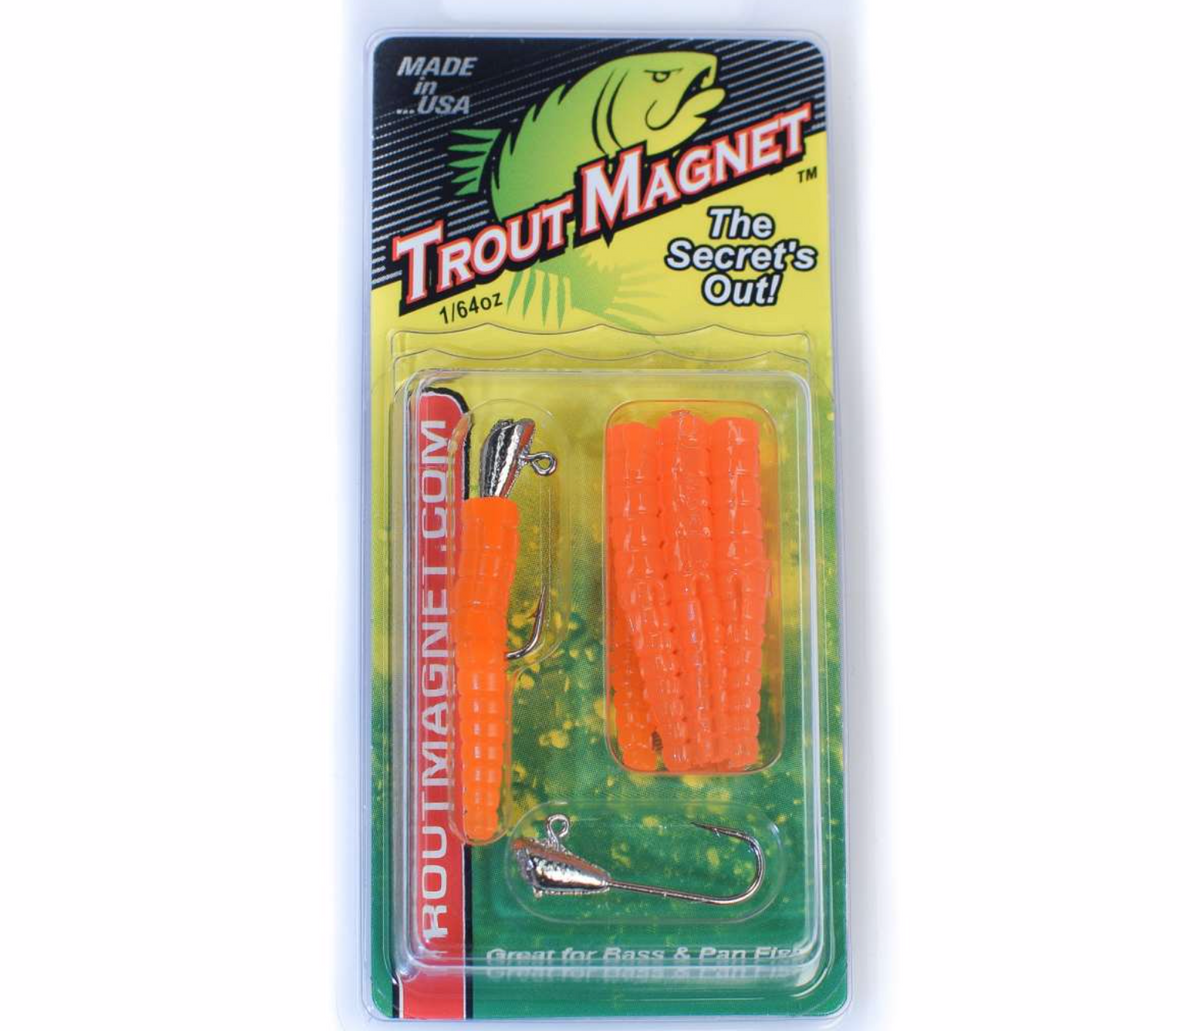 Leland Lures Trout Magnet Softbait 1/64 oz, Black & Green, 9 Count